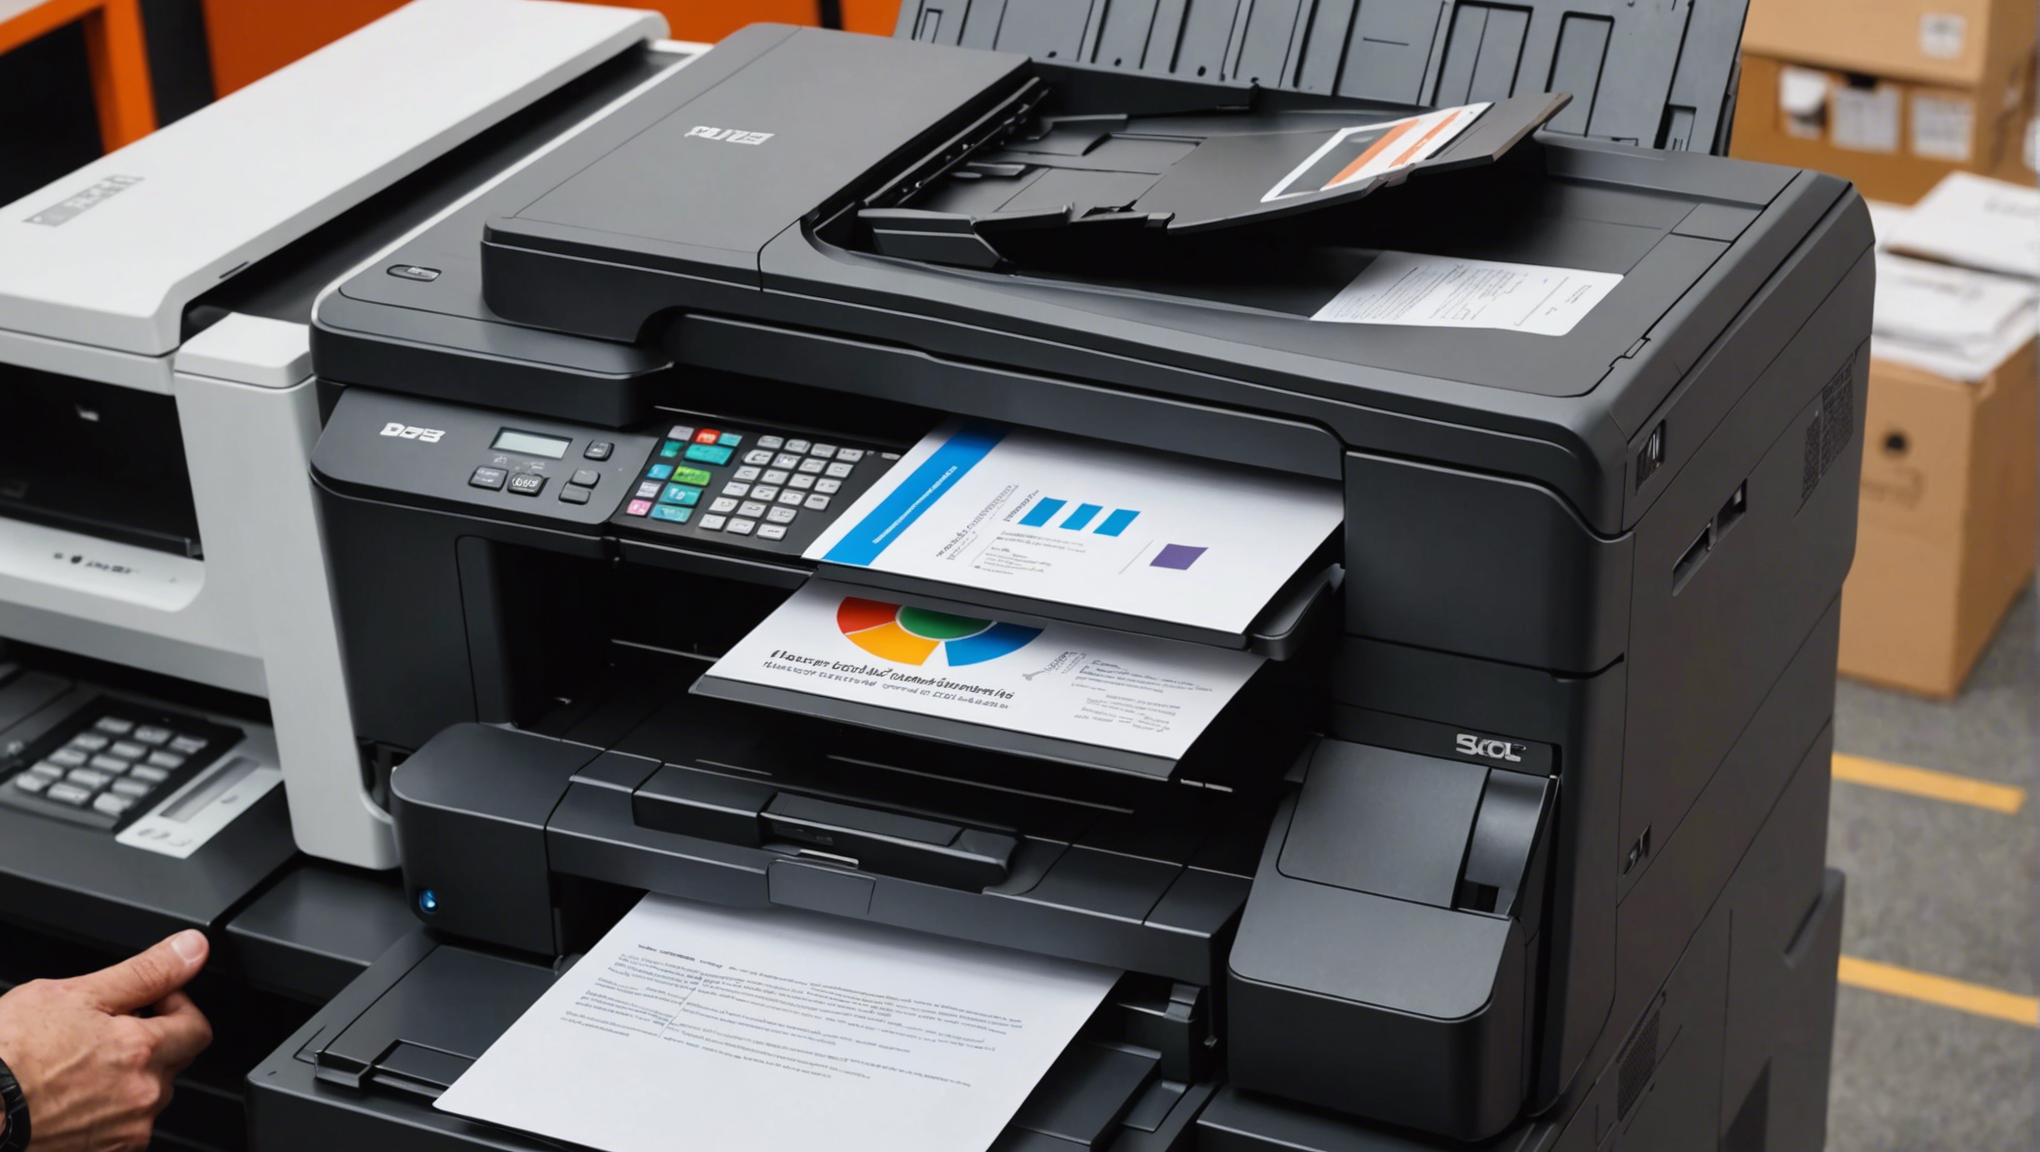 découvrez les imprimantes professionnelles à prix abordables et comprenez ce qu'est une imprimante professionnelle abordable.